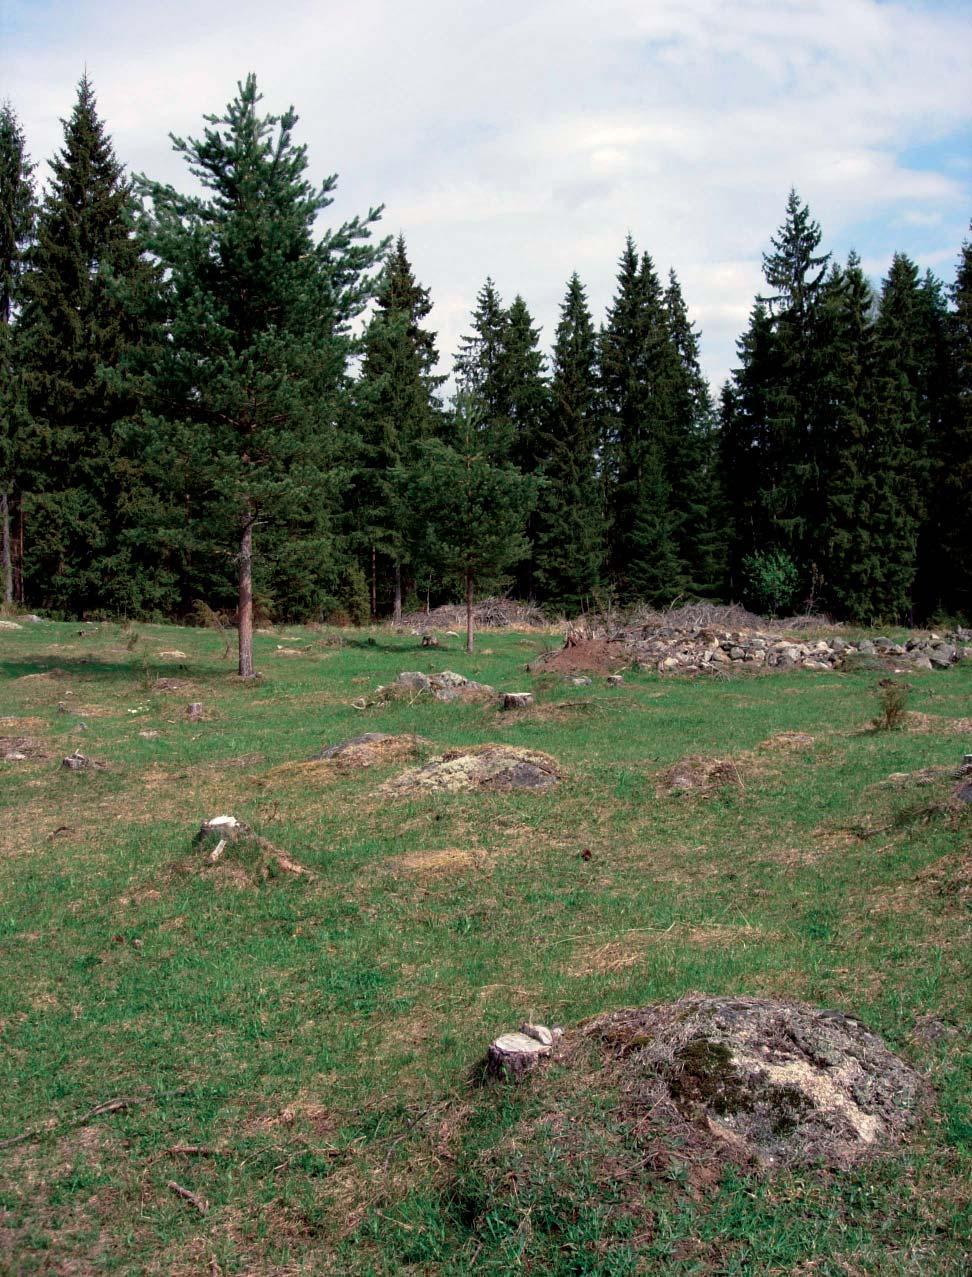 Janne Heliölä Perinnebiotoopin kunnostus alkaa ylimääräisen puuston poistamisella. Jatkossa karja ylläpitää kohteen avoimuutta ja mahdollistaa niittykasvillisuuden leviämisen.